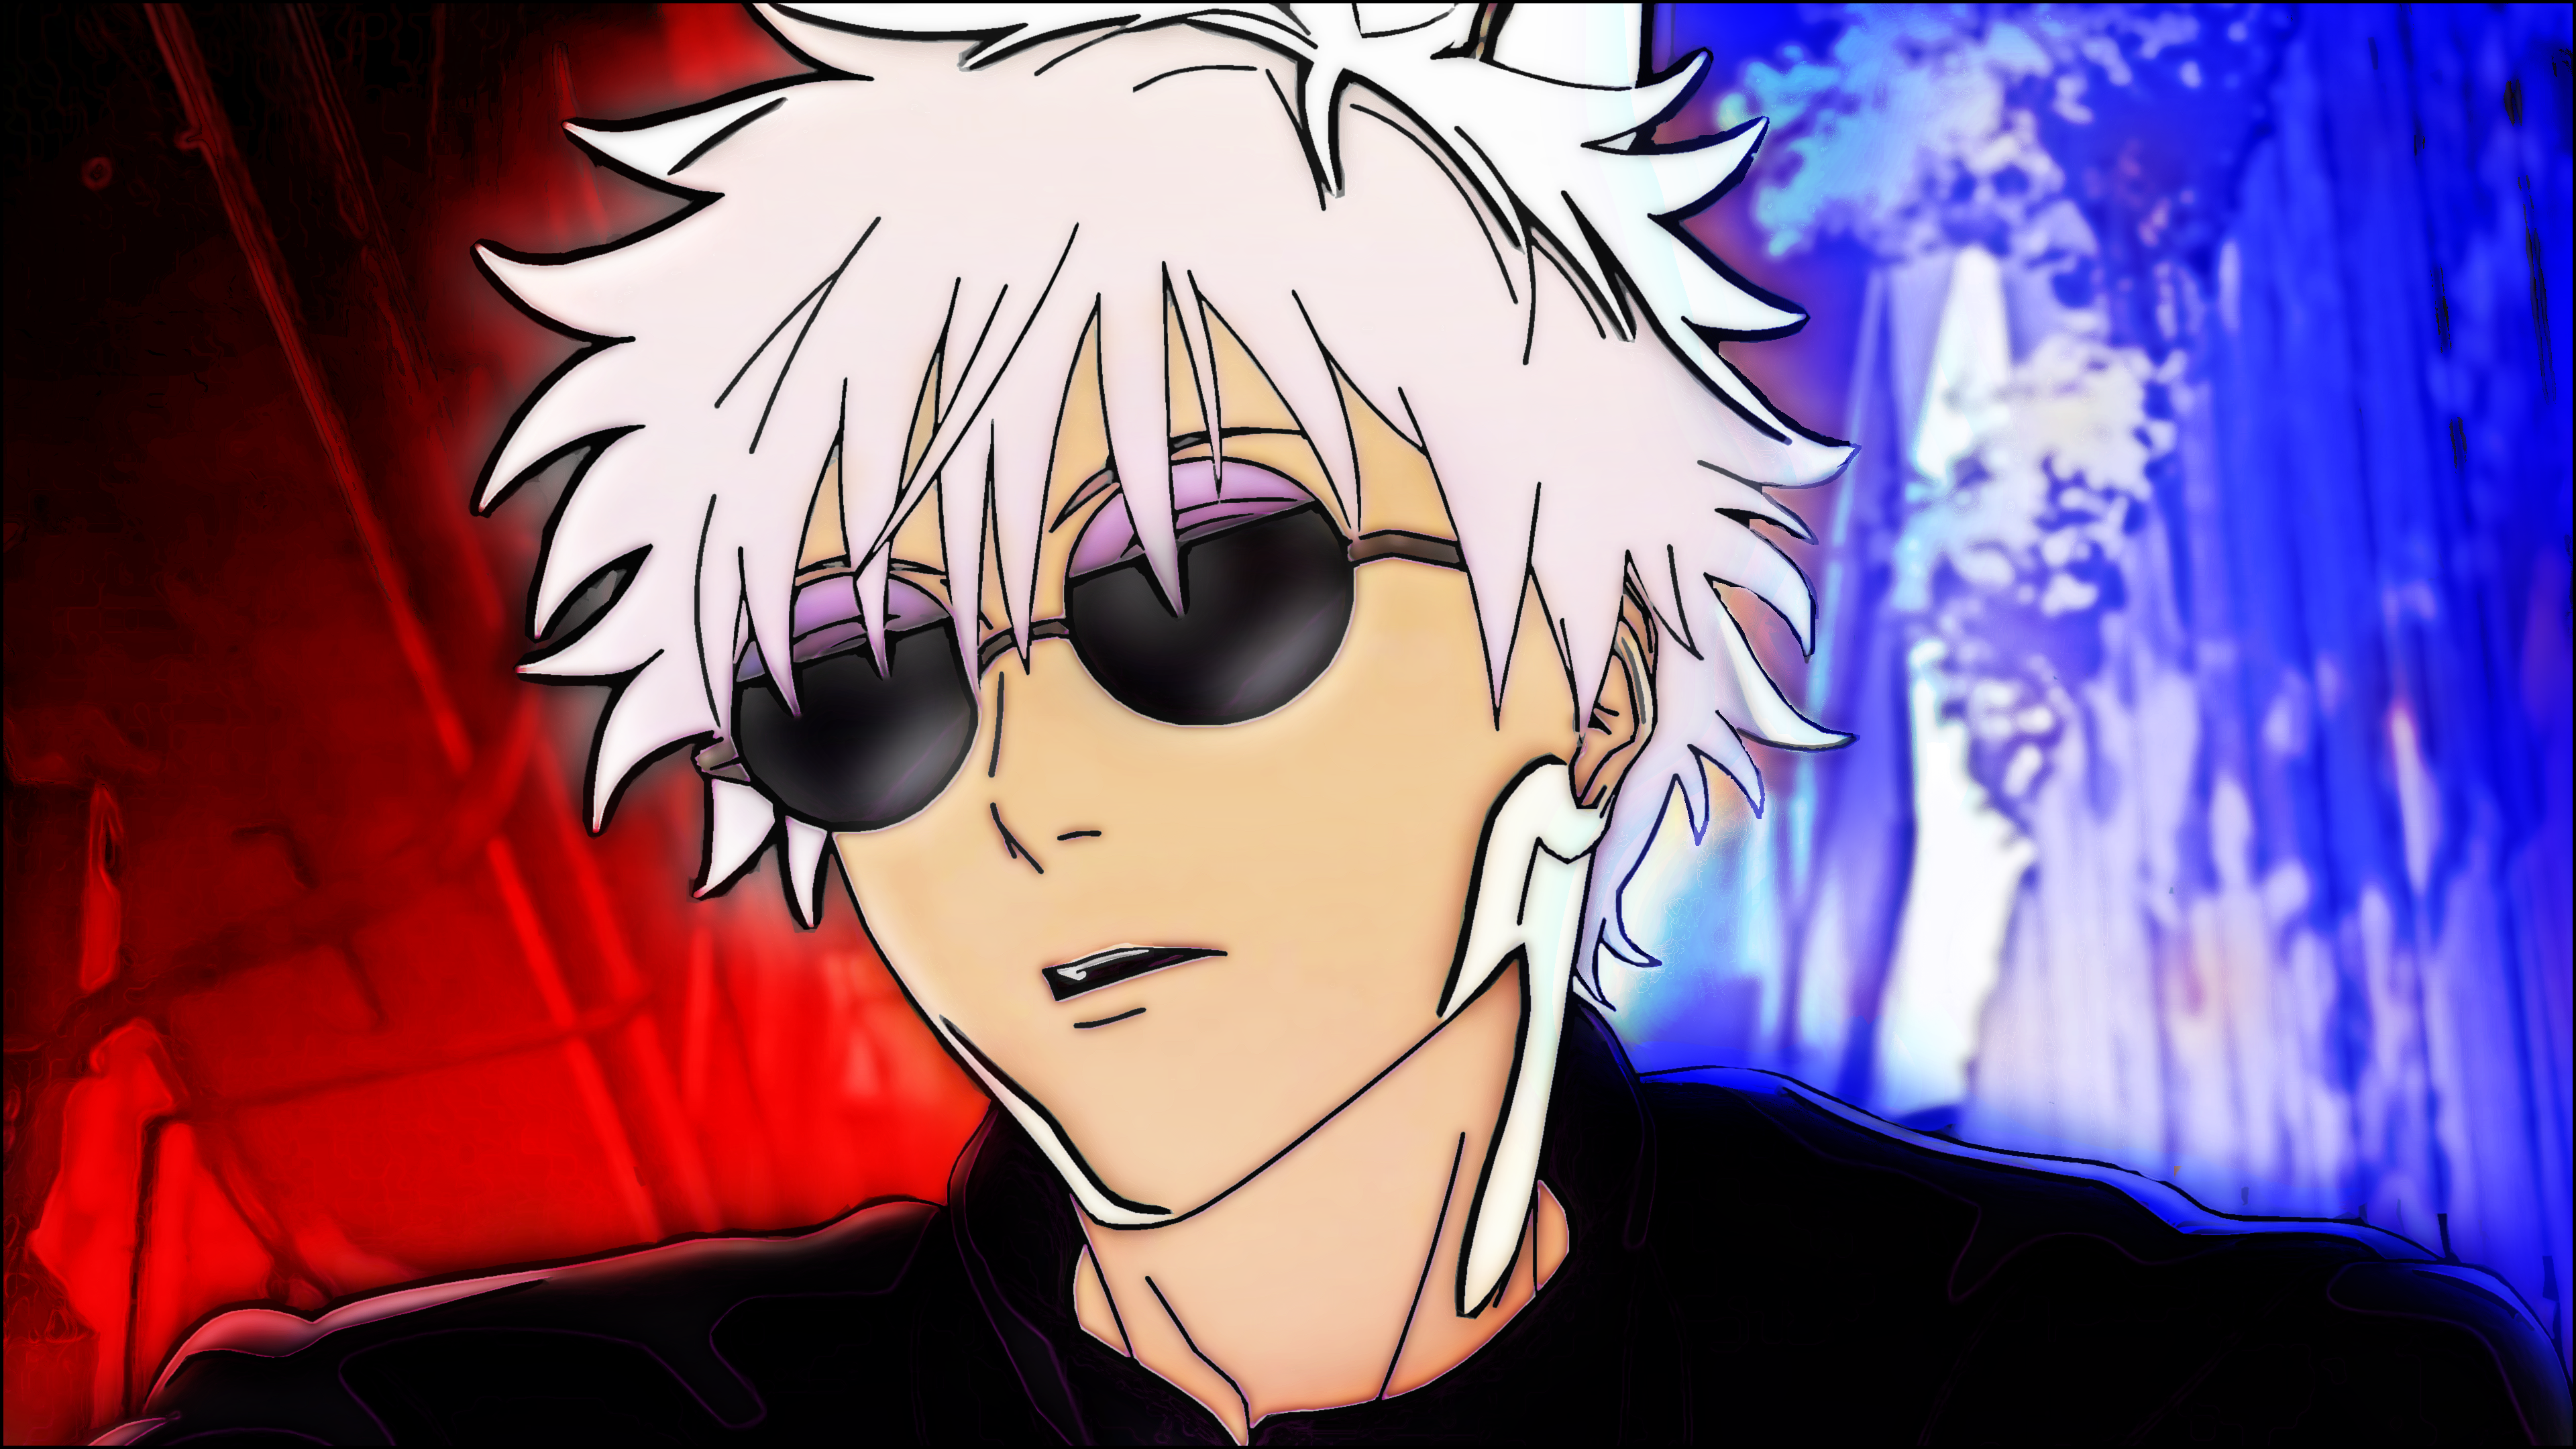 Anime 3840x2160 Satoru Gojo Jujutsu Kaisen anime anime boys white hair sunglasses face simple background minimalism